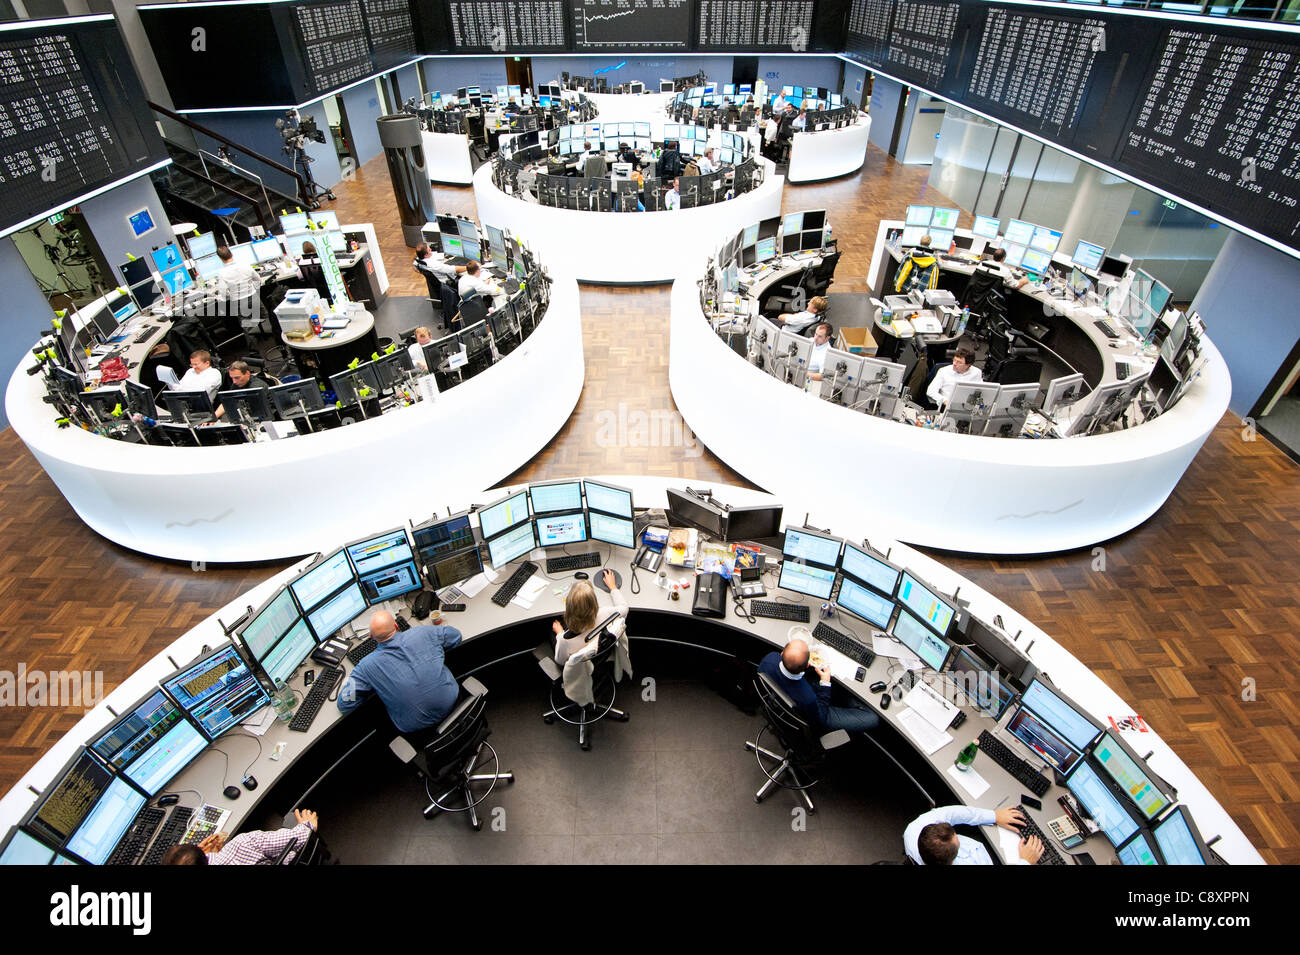 frankfurt stock exchange trading floor